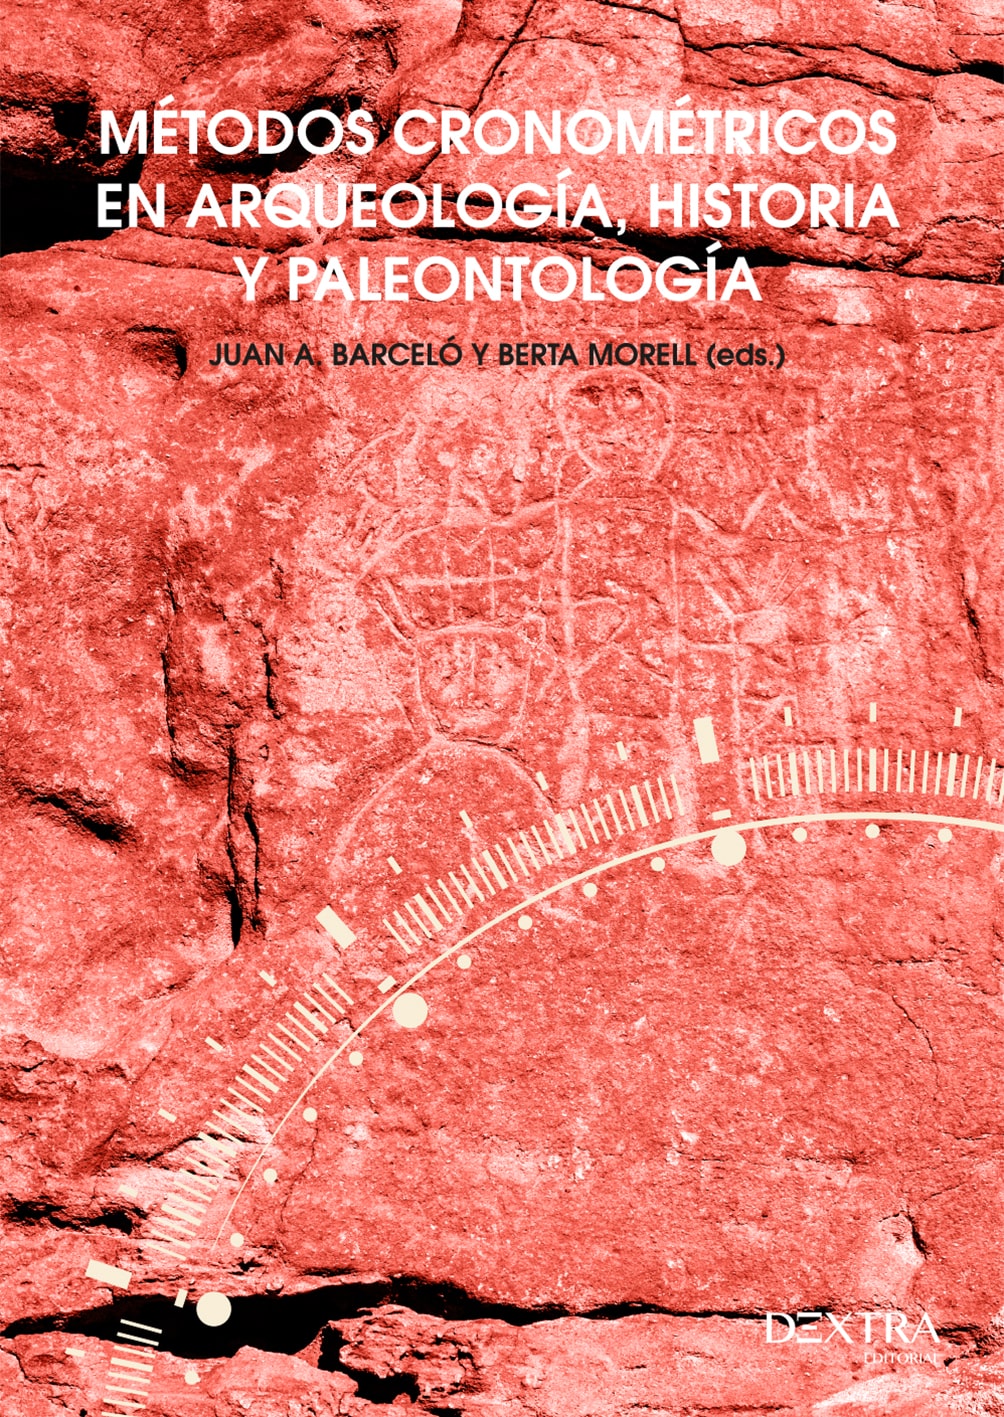 Imagen de portada del libro Métodos cronométricos en arqueología, prehistoria y paleontología